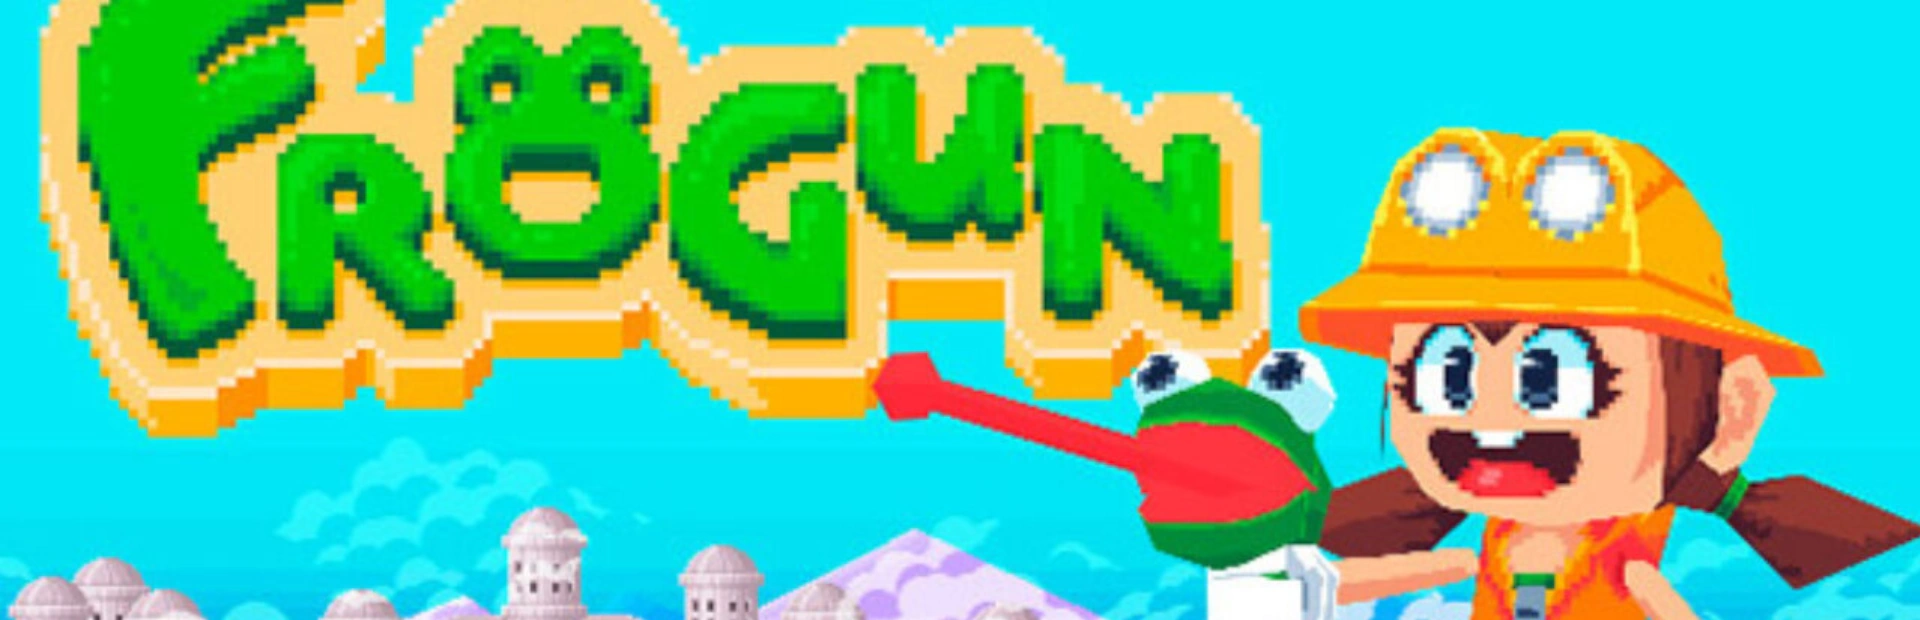 دانلود بازی Frogun برای PC | گیمباتو